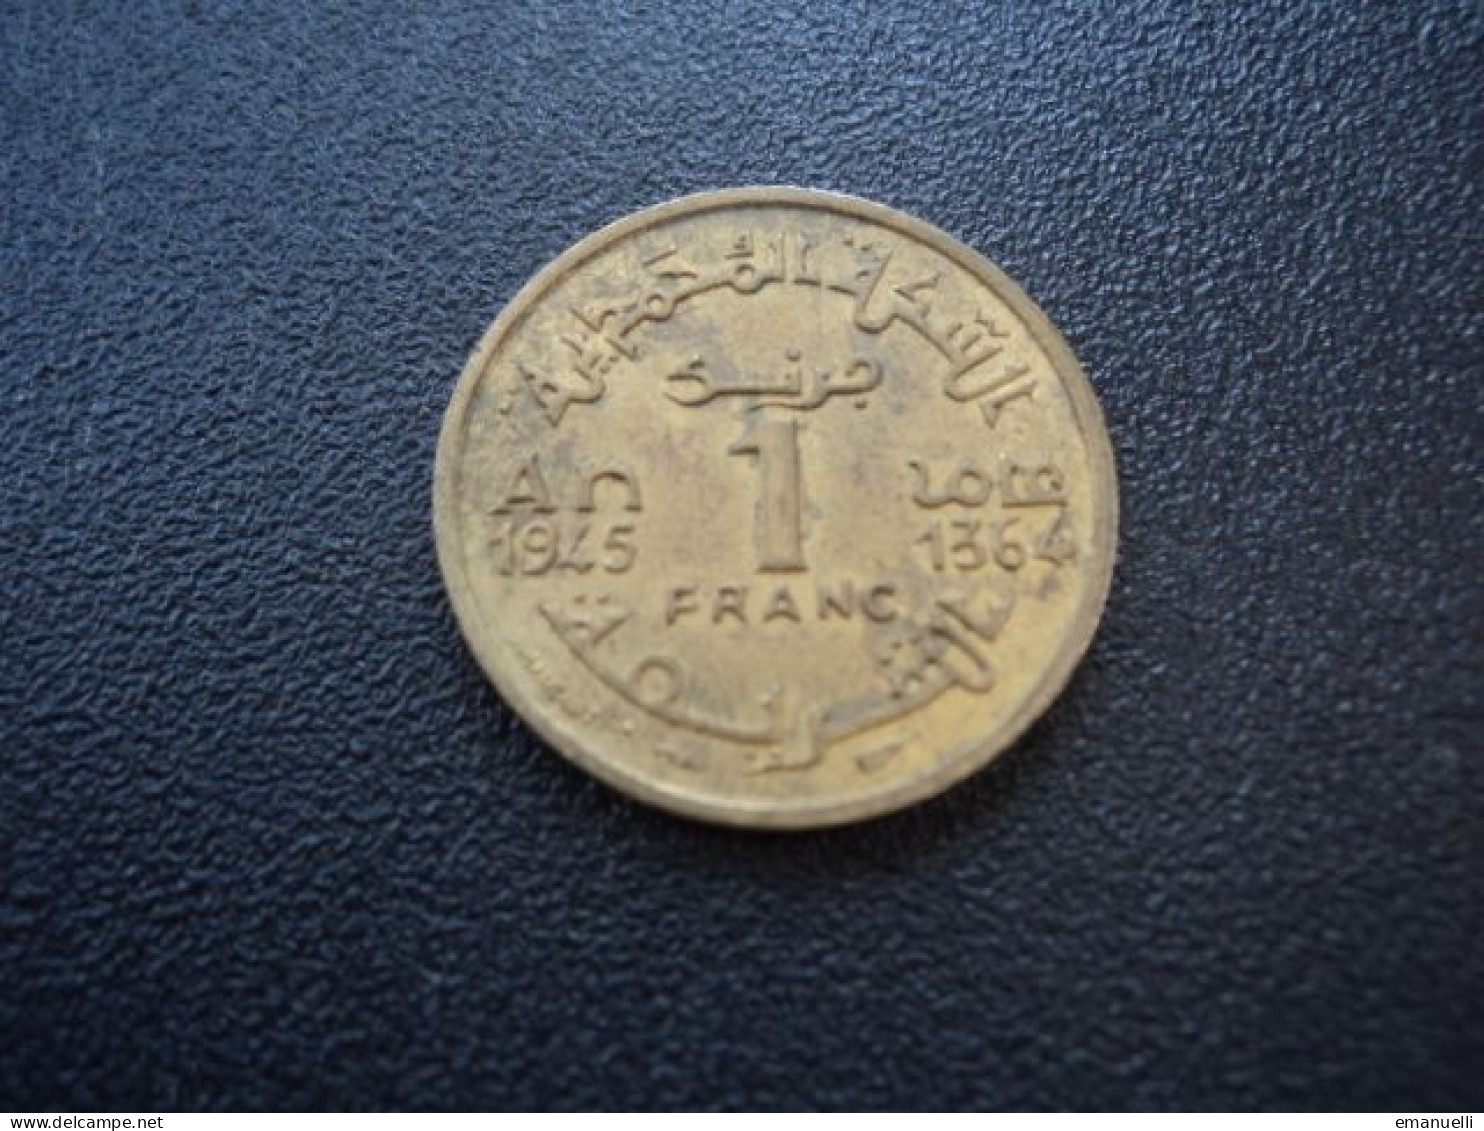 MAROC : 1 FRANC   1945 - 1364     G.225 / Y 41      SUP * - Marocco